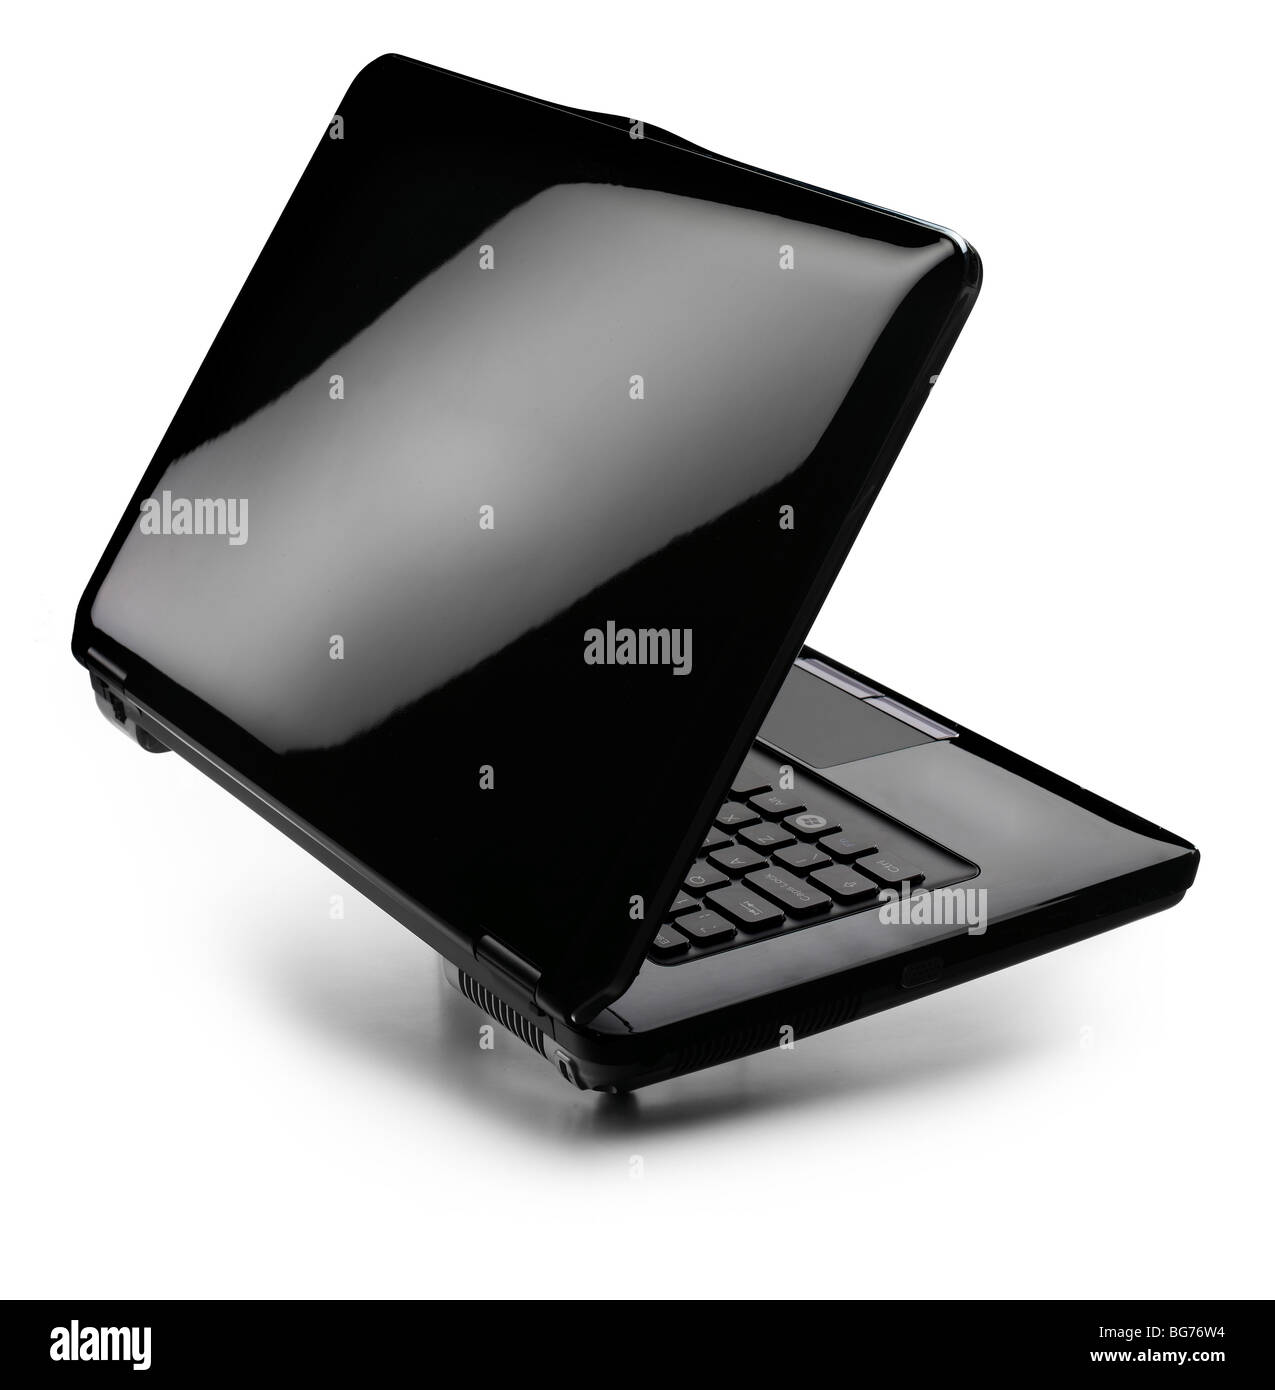 Black laptop shiny lid PC Stock Photo